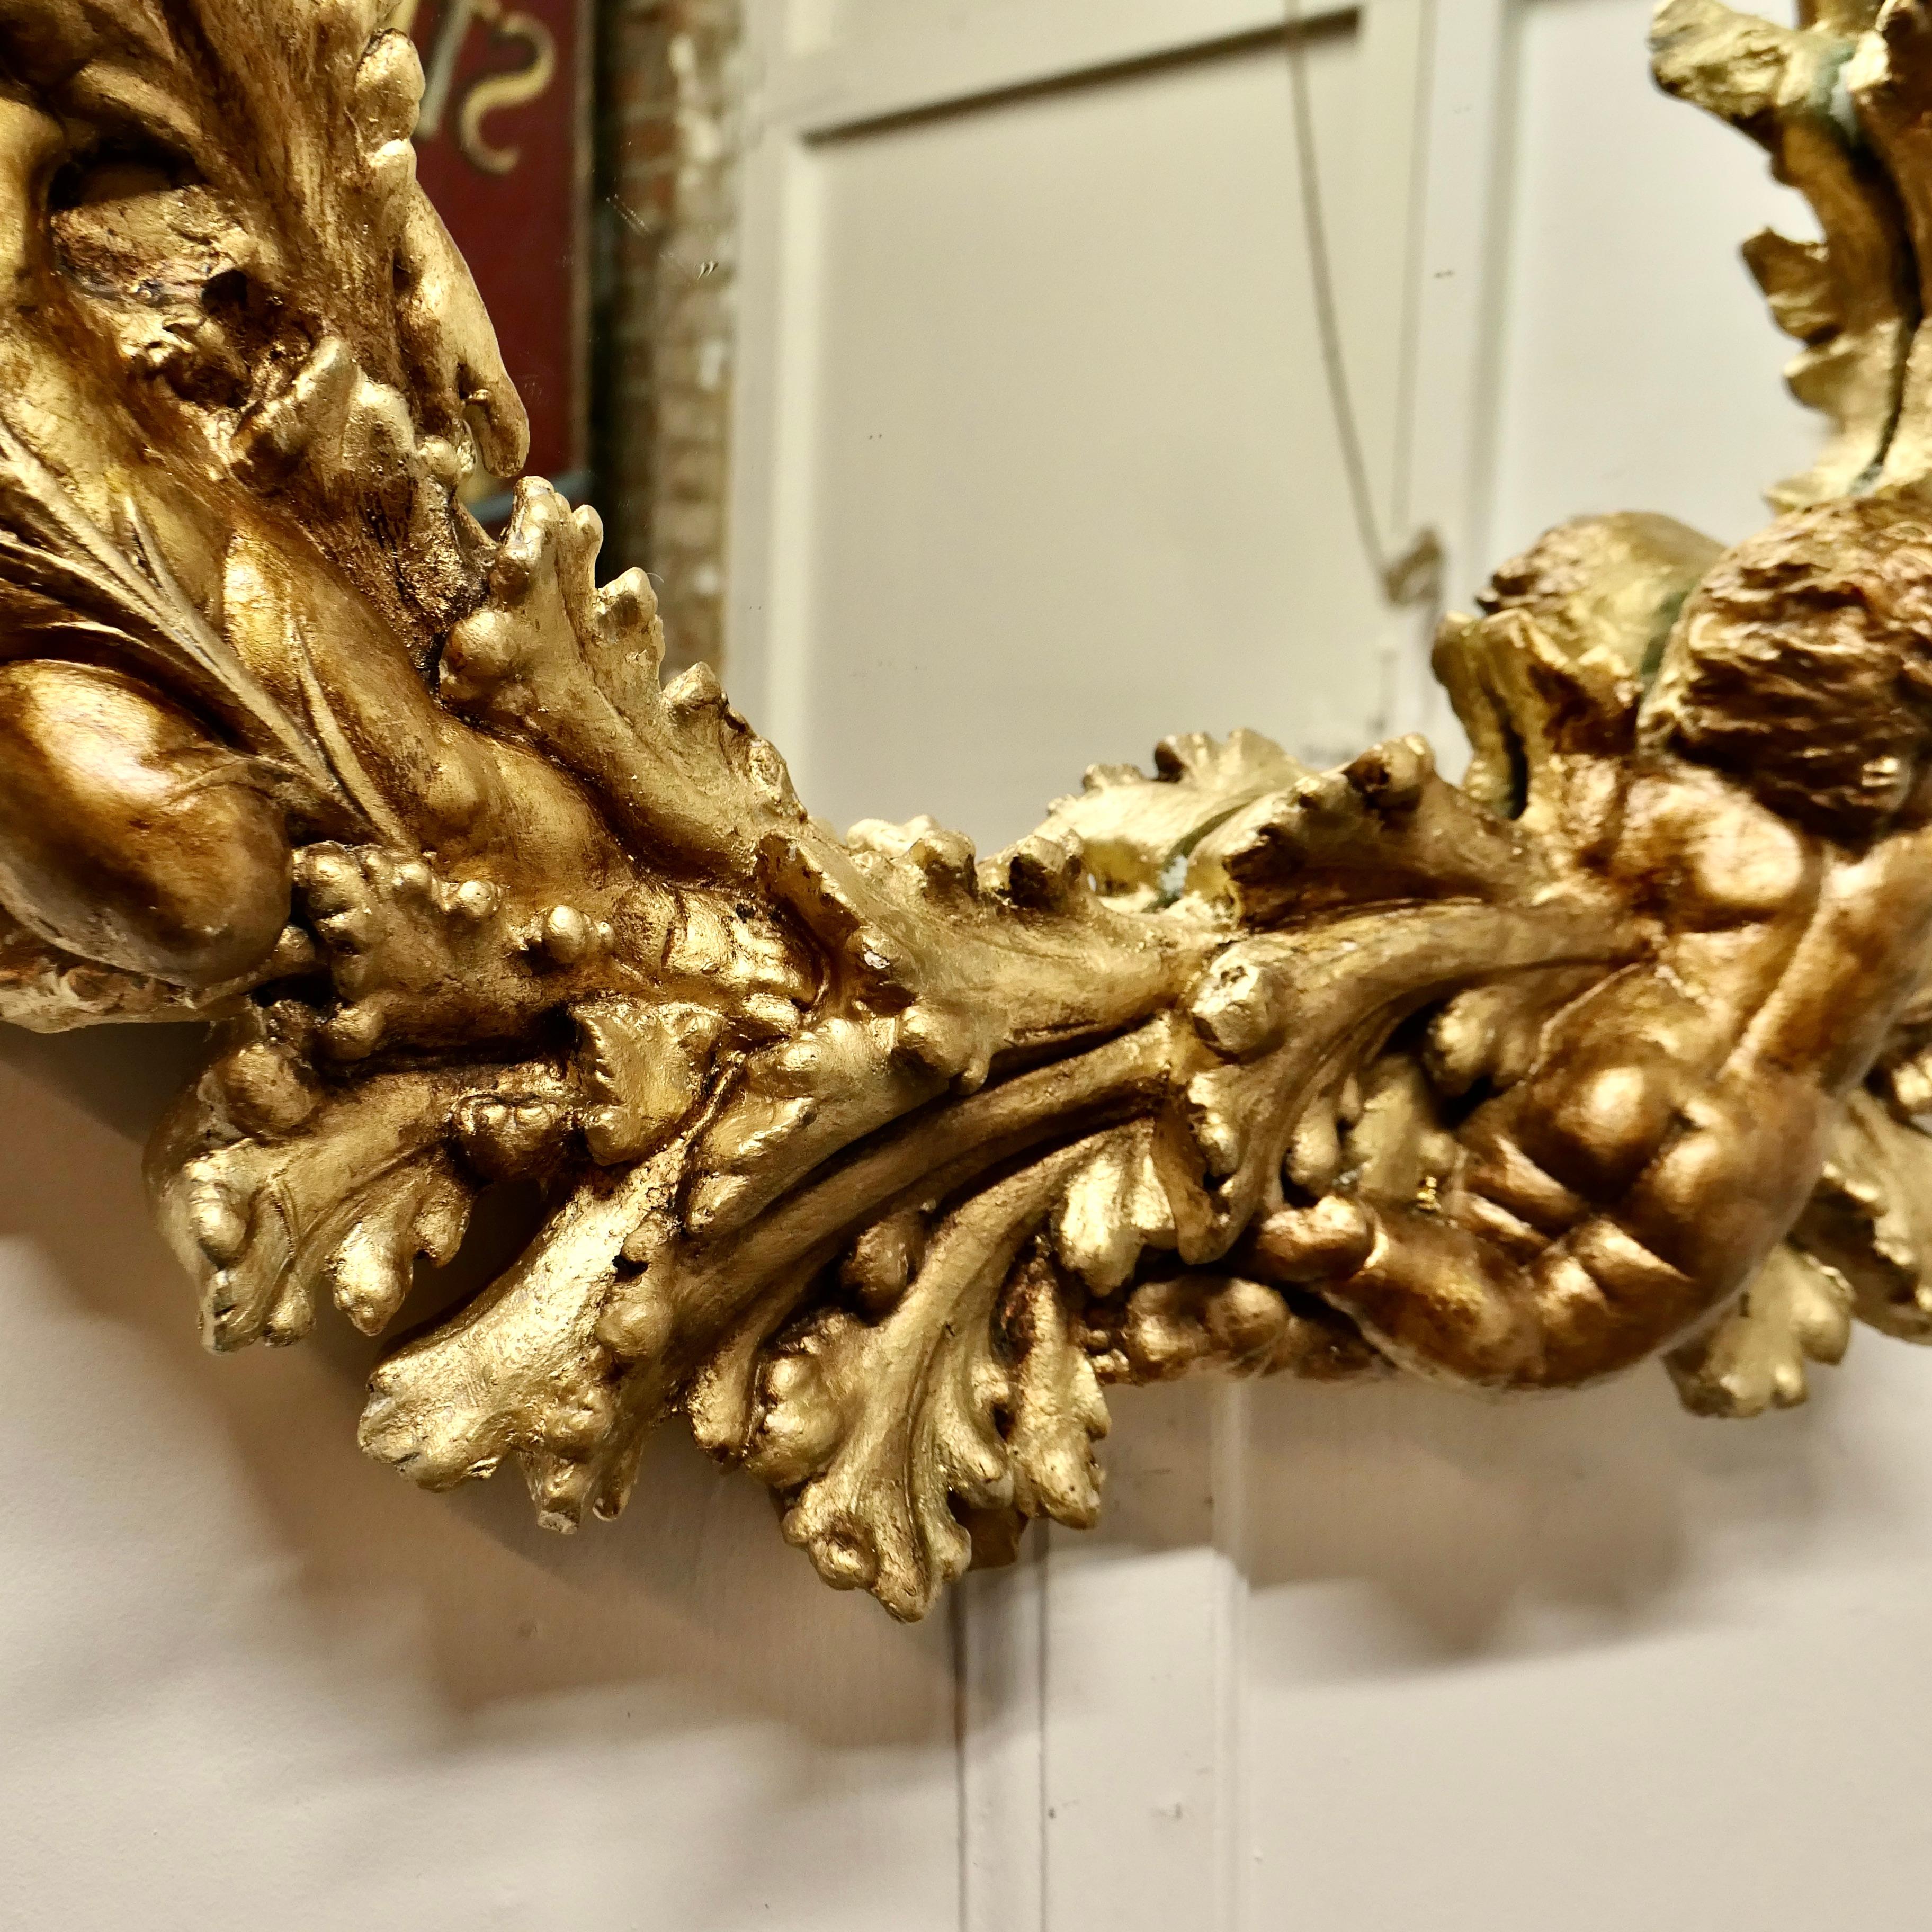 Superbe miroir couronné doré italien du 19ème siècle

Il s'agit d'une pièce charmante, le miroir a un cadre doré, qui a un cadre circulaire très élaboré de 9